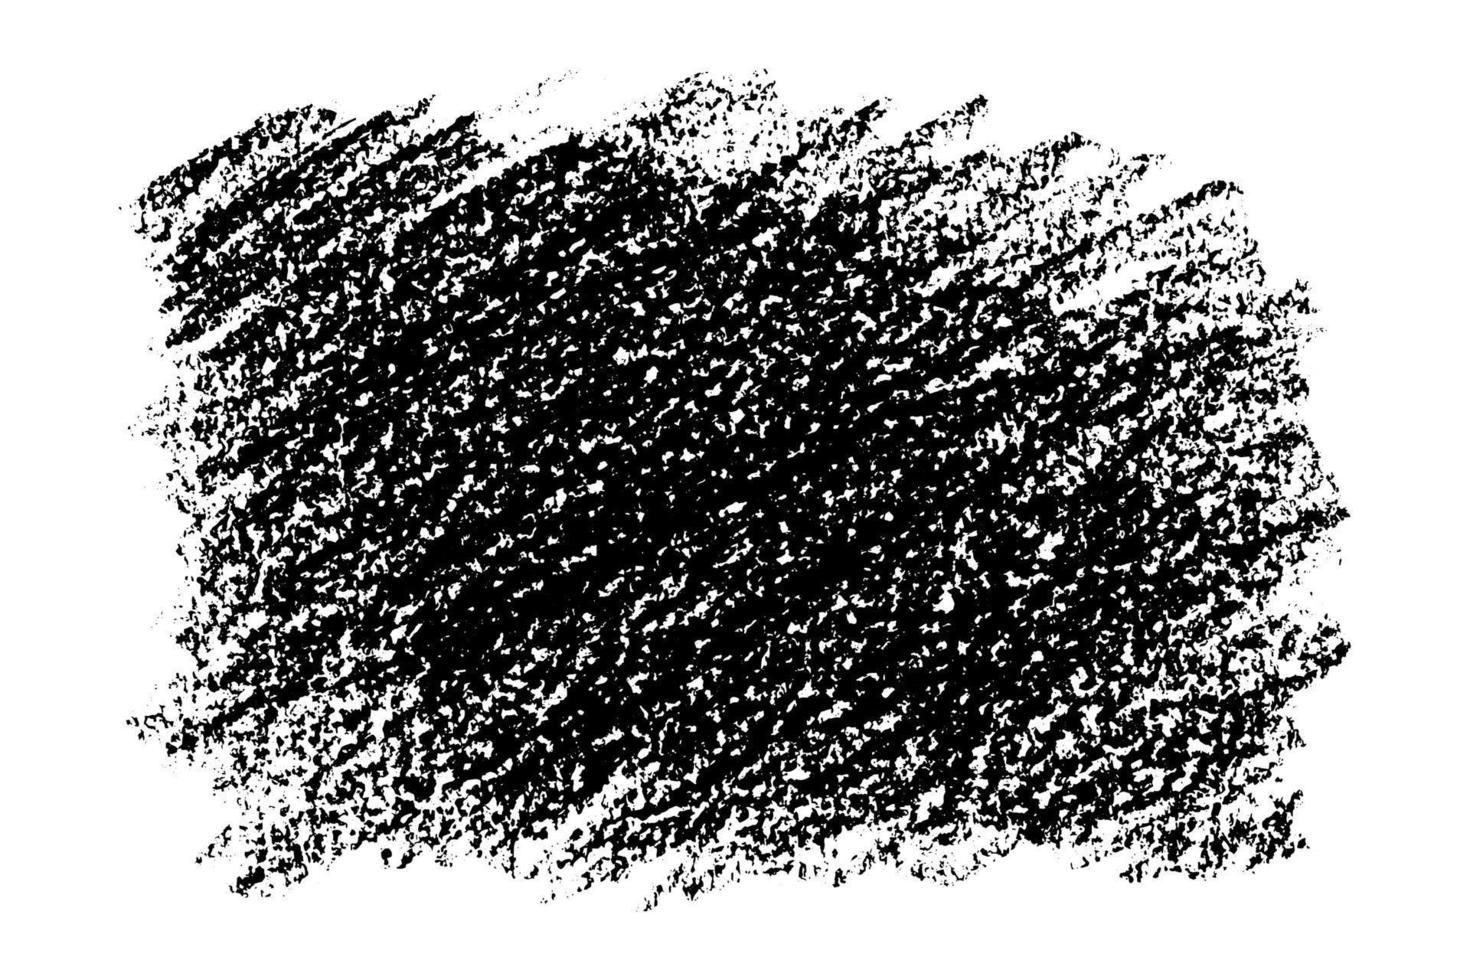 fundo grunge de textura preta desenhado com carvão. inverso de rabiscos de giz isolados no fundo branco. ilustração vetorial. vetor